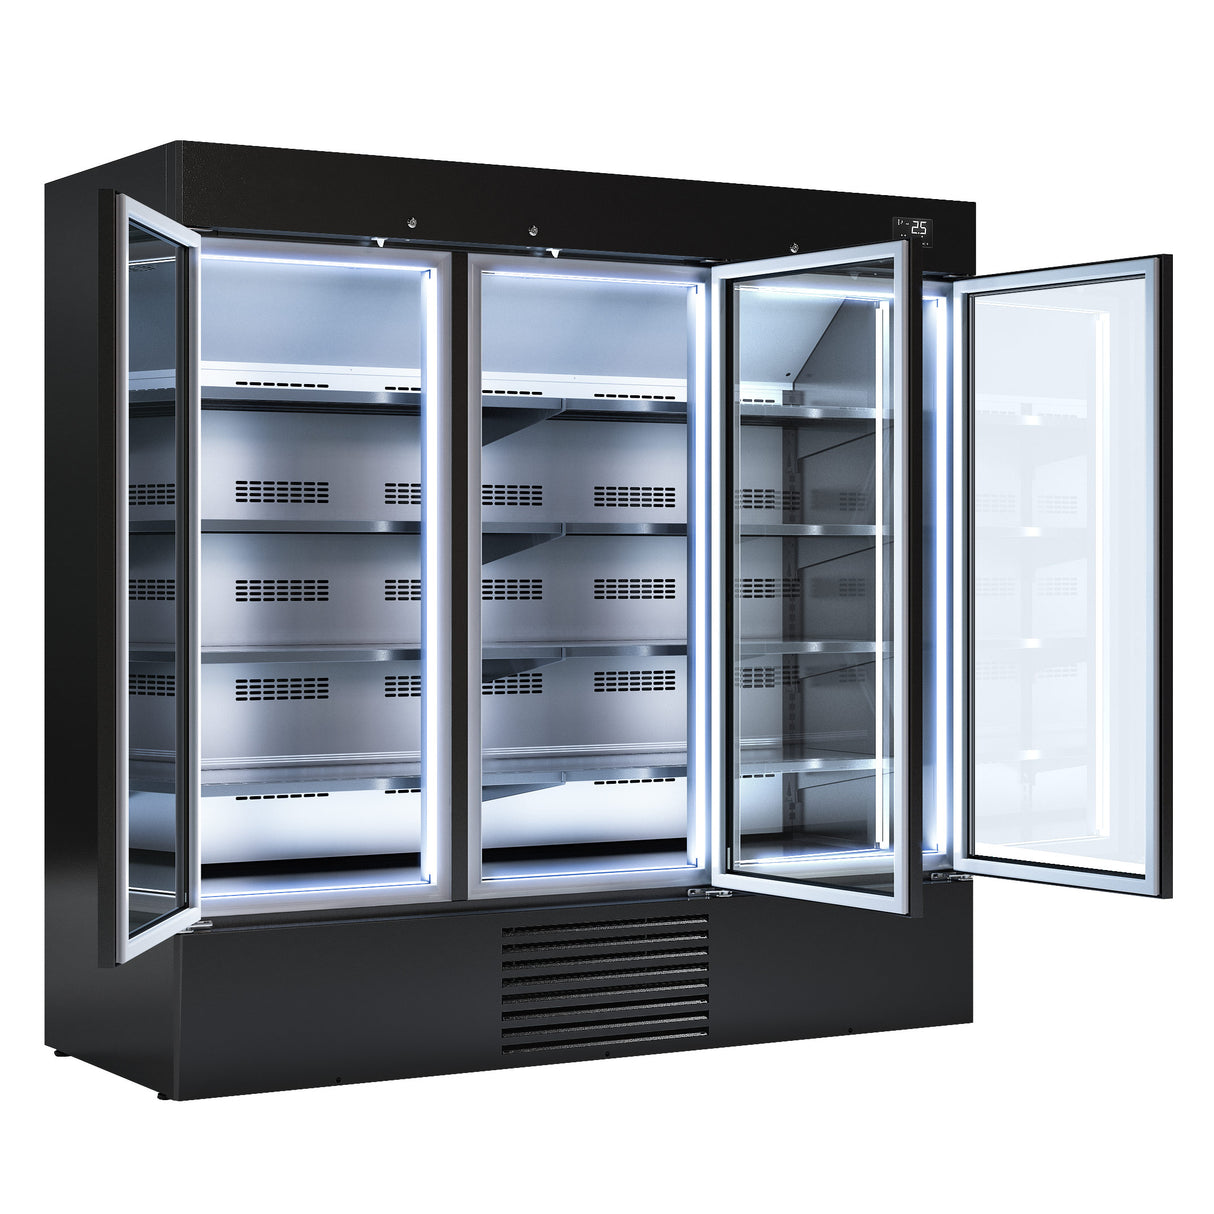 Flaskekjøleskab - 2030 liter - med 2 dører - sort